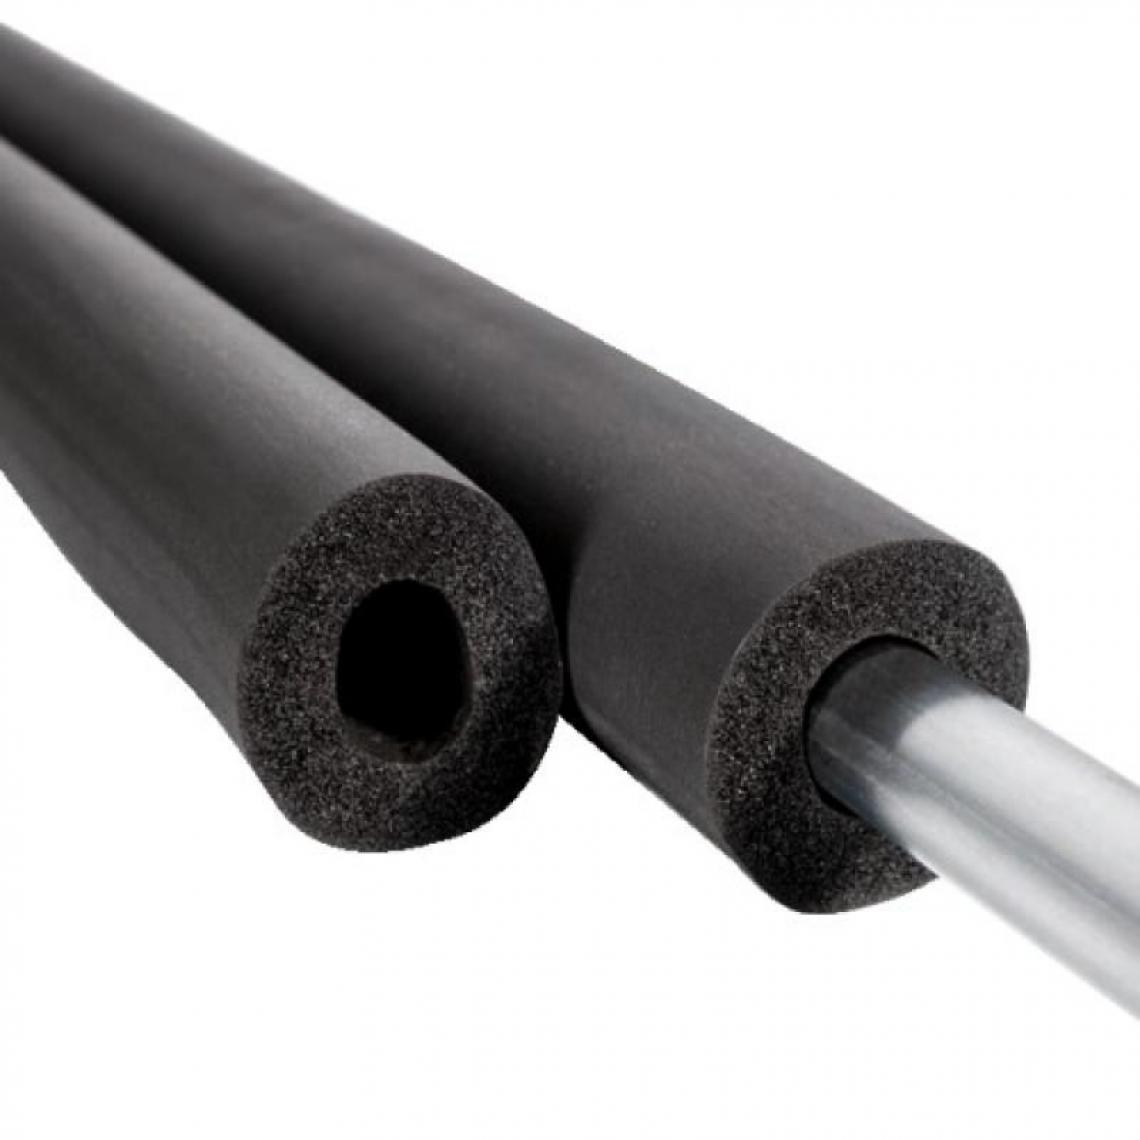 NMC - Tube isolant non fendu, épaisseur 19 mm, longueur 2 m, pour tuyaux diamètre 18 - Coudes et raccords PVC